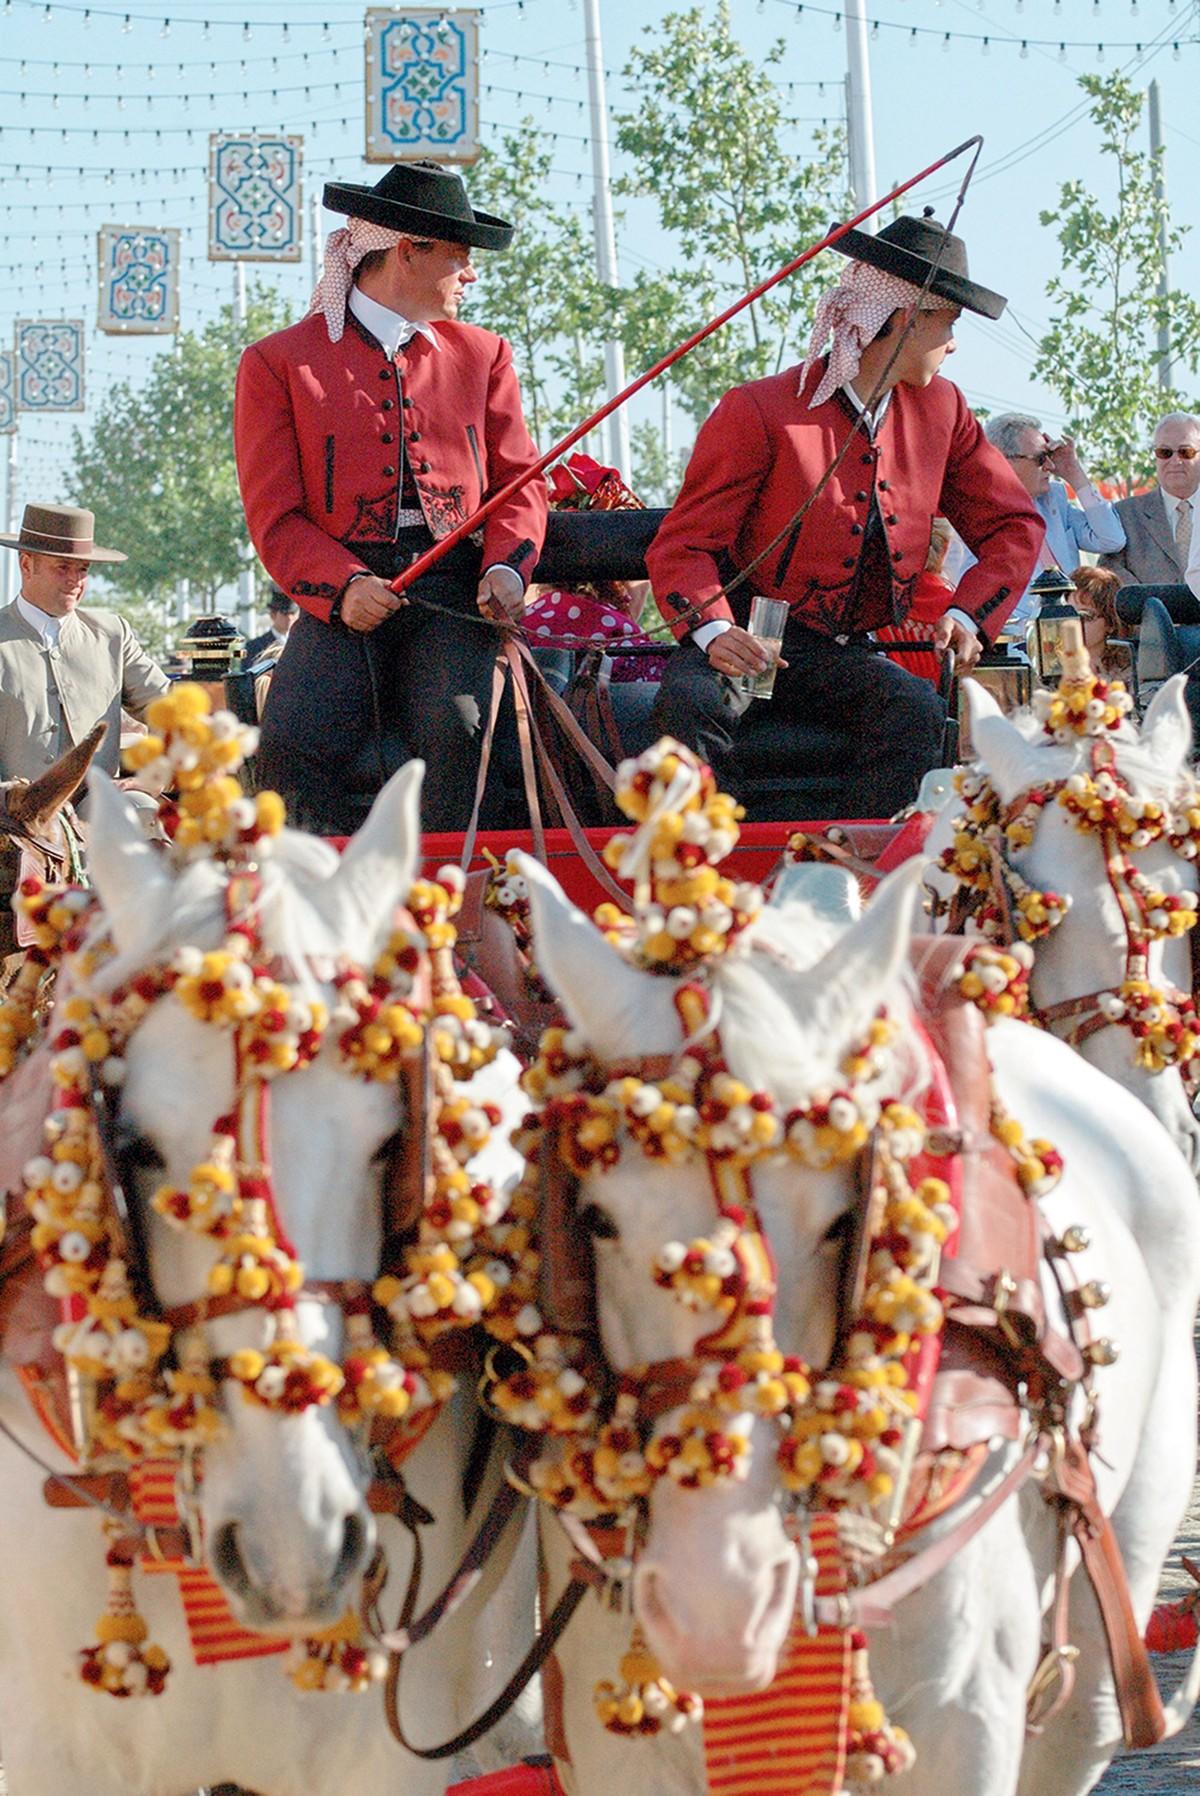 Paseo de caballos en la feria de Sevilla.